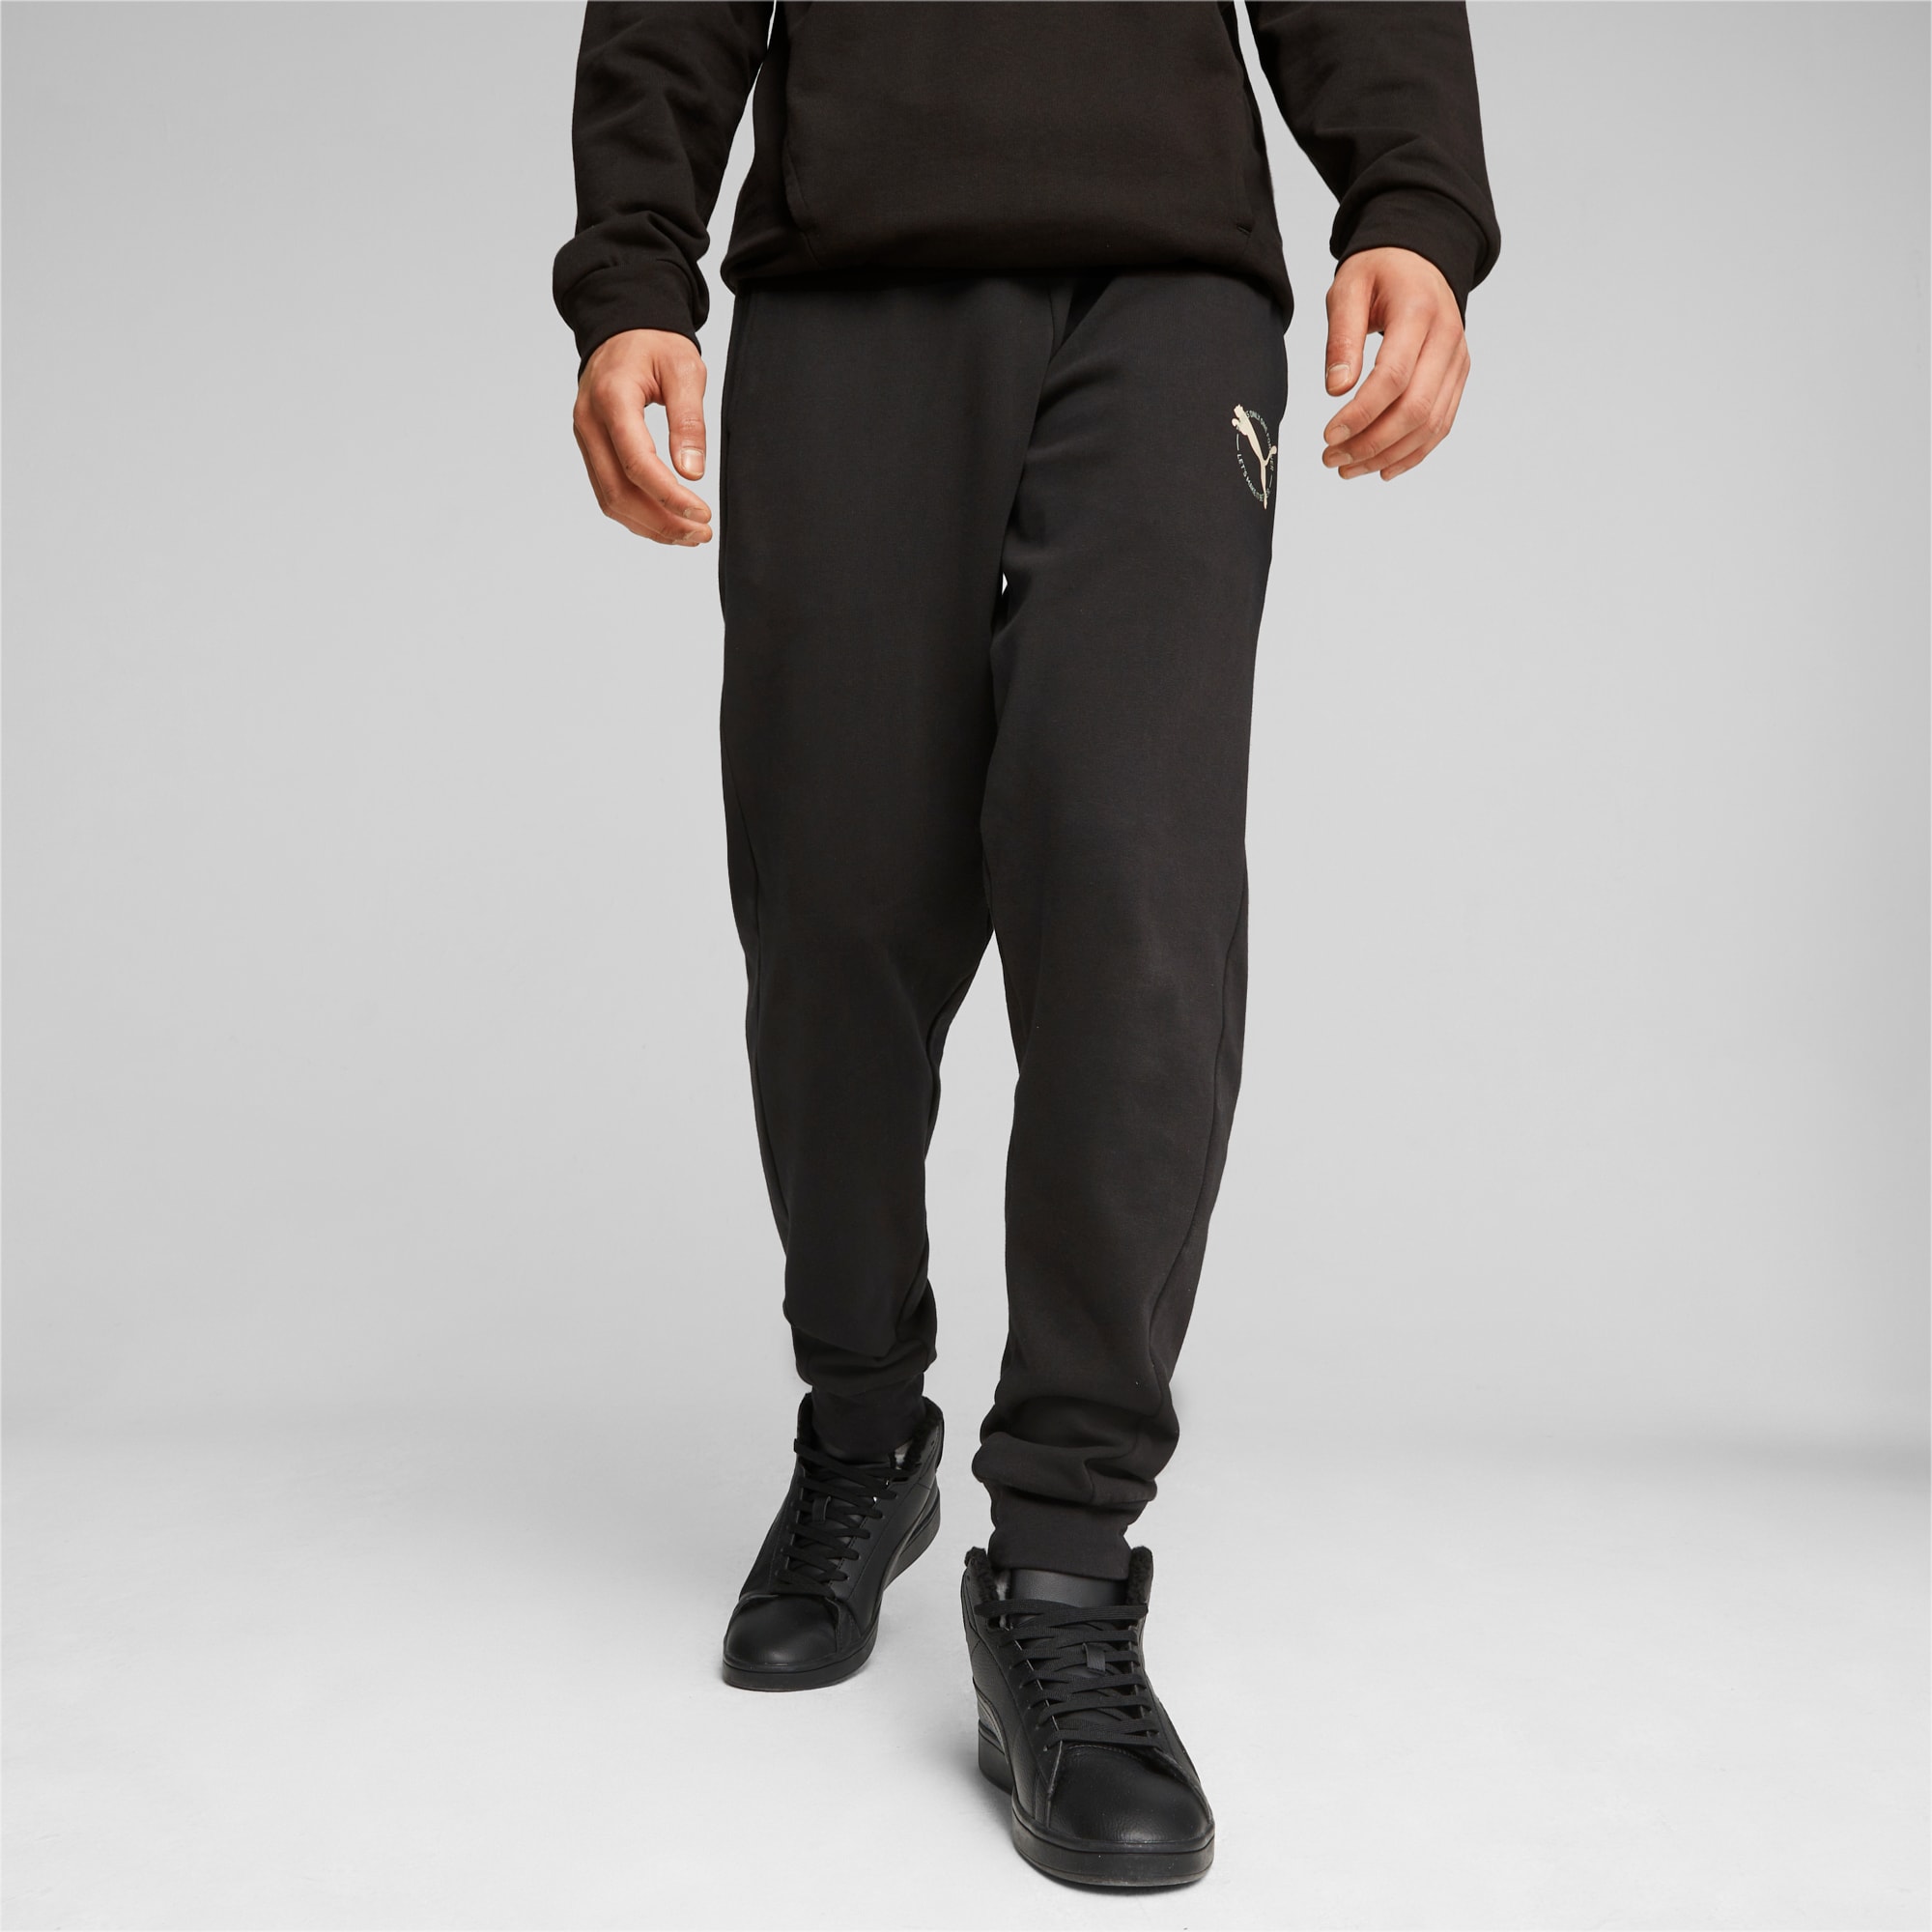 PUMA Better Sportswear Men's Sweatpants, Black